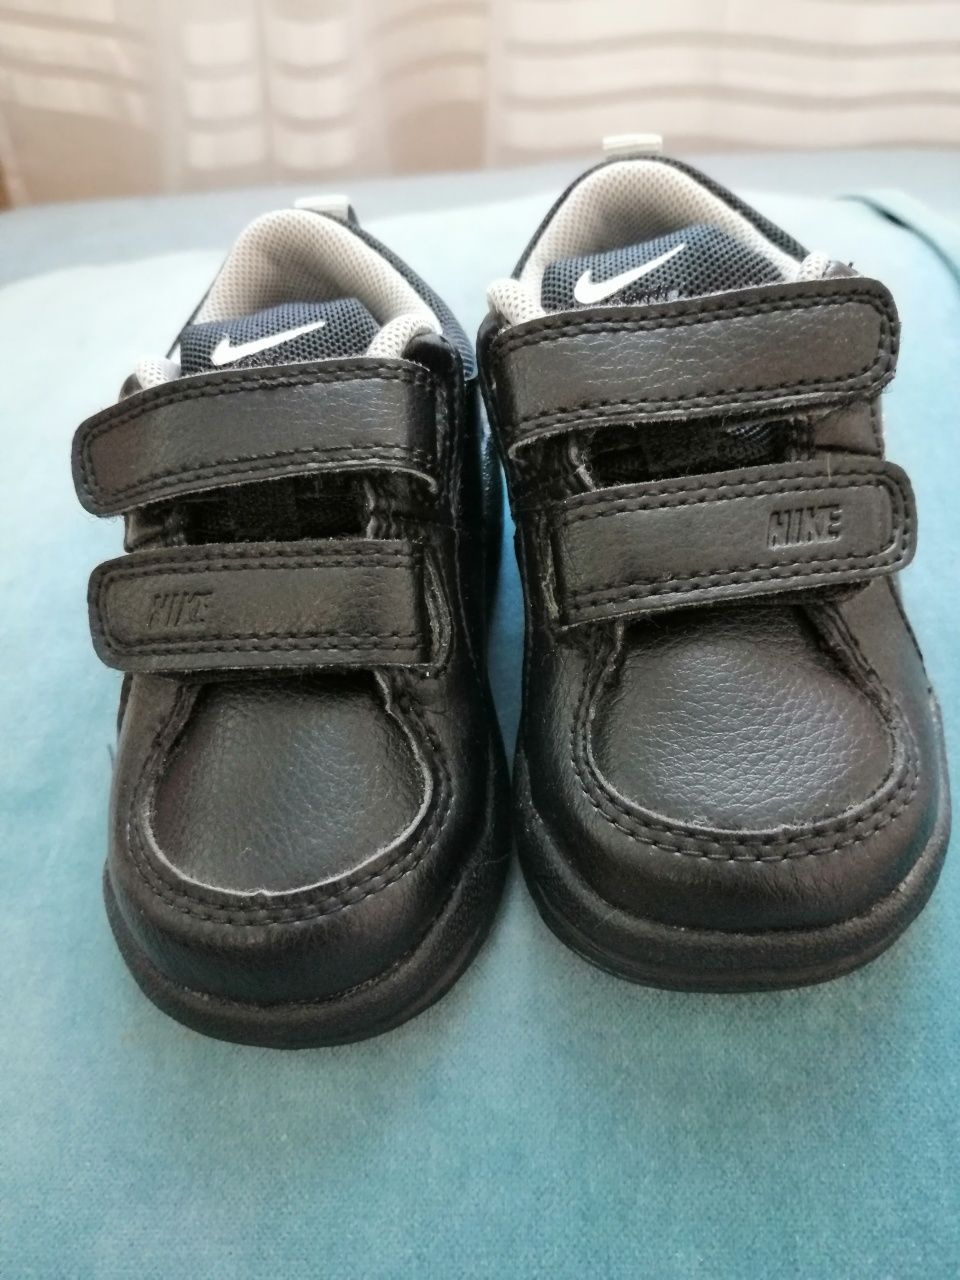 Buty Nike dla dzieci r21 (11cm)